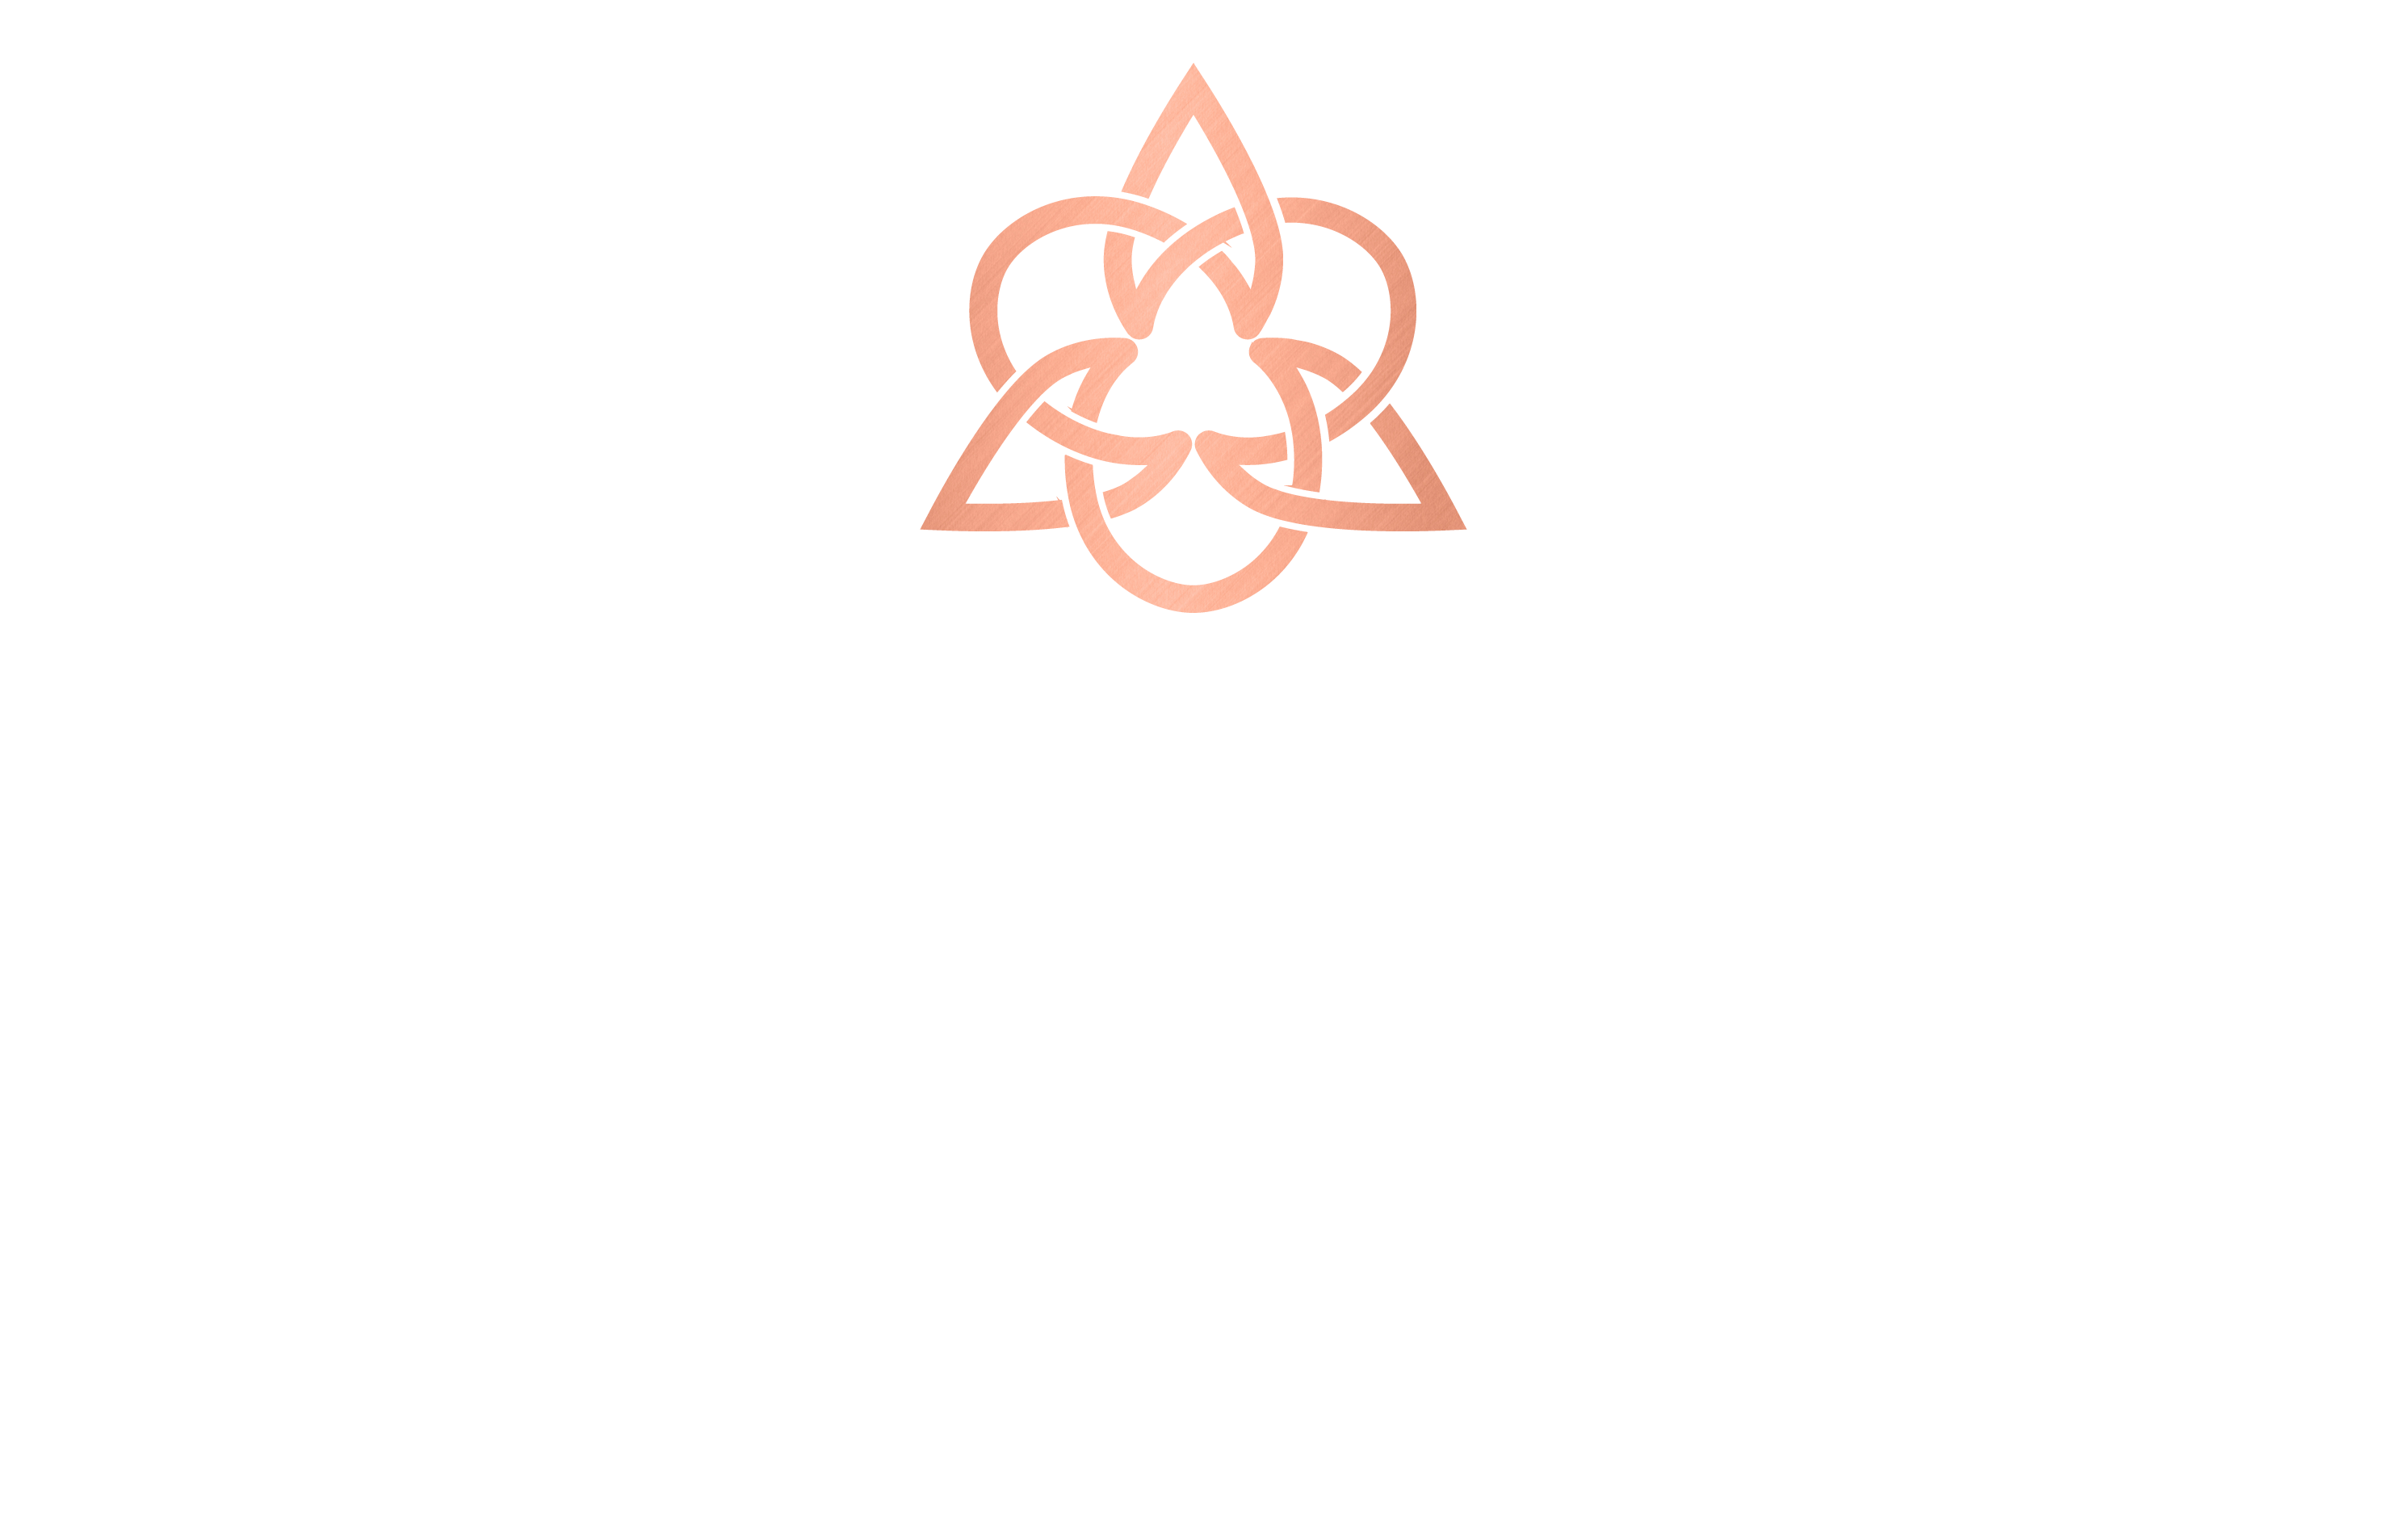 saxon vale logo in white